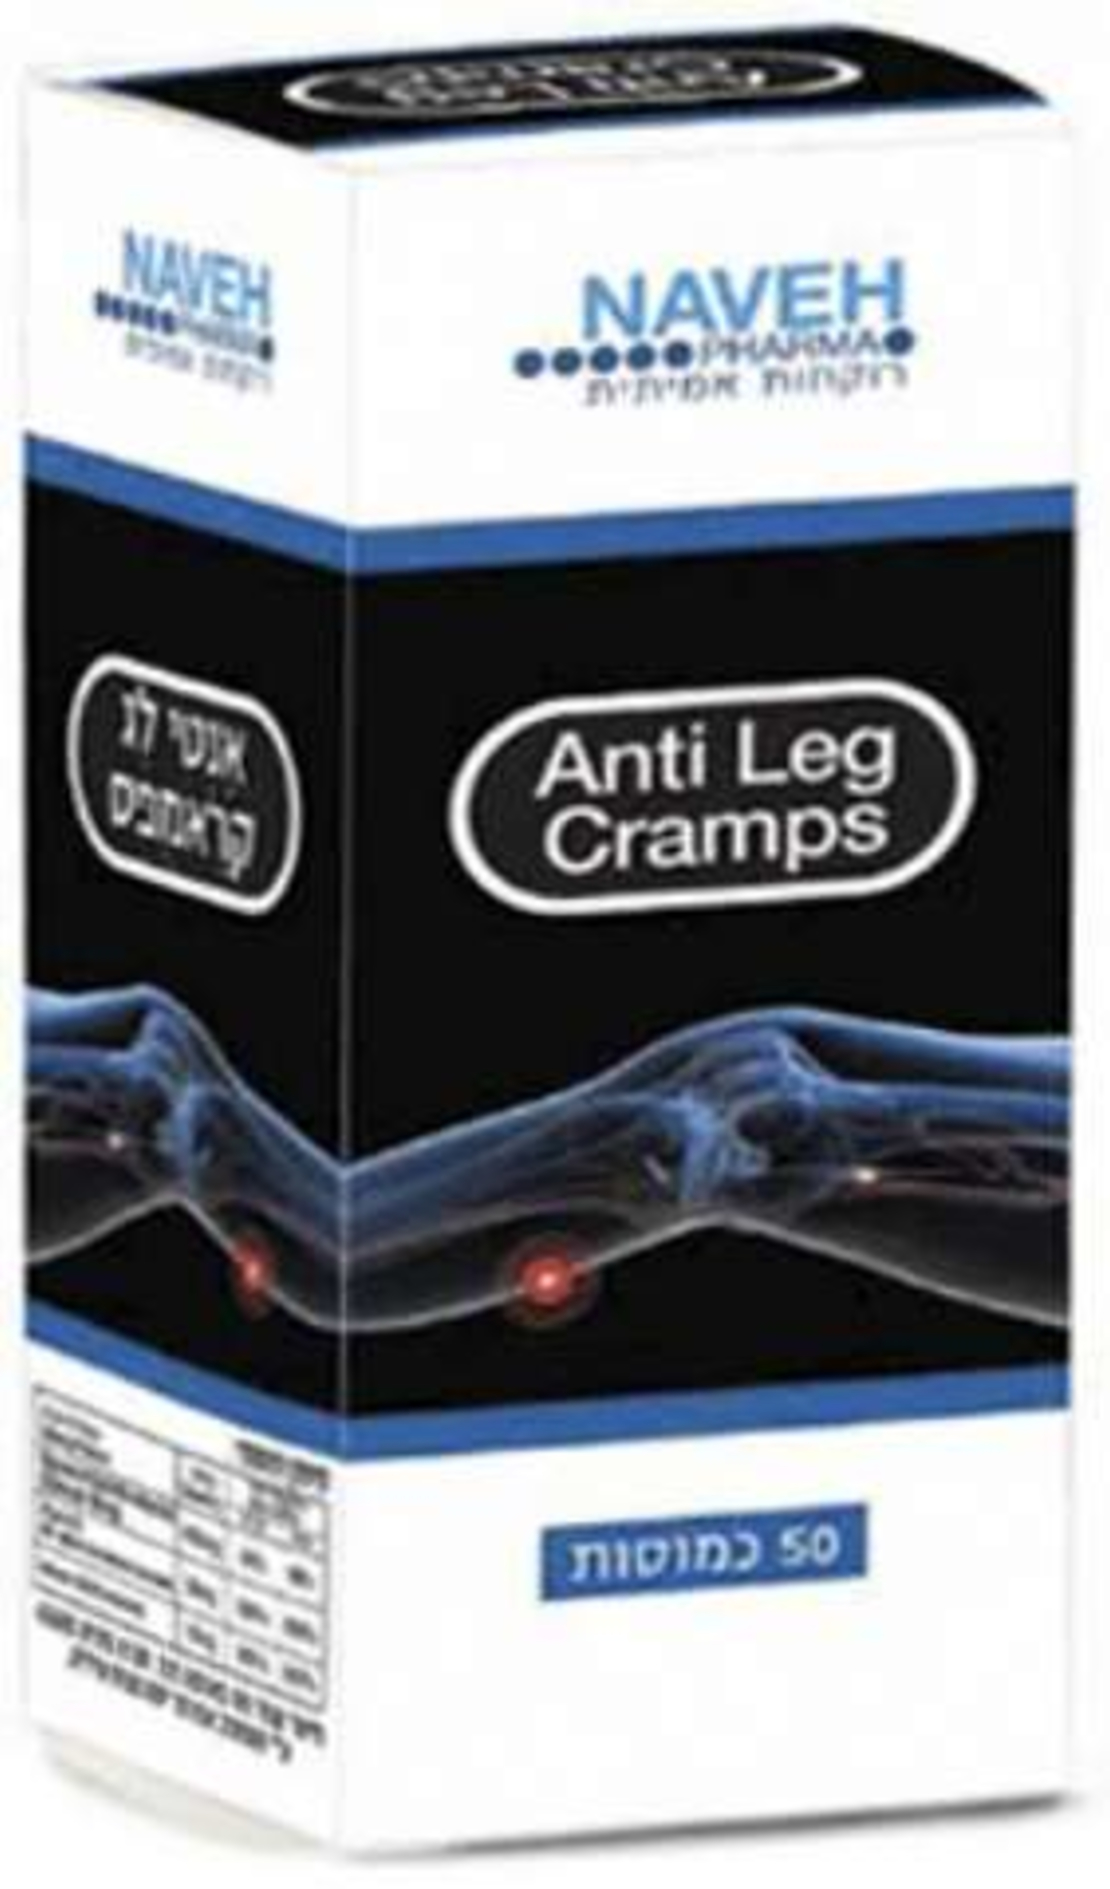 אנטי לג קרמפס - מגנזיום להתכווצויות שרירים ברגליים